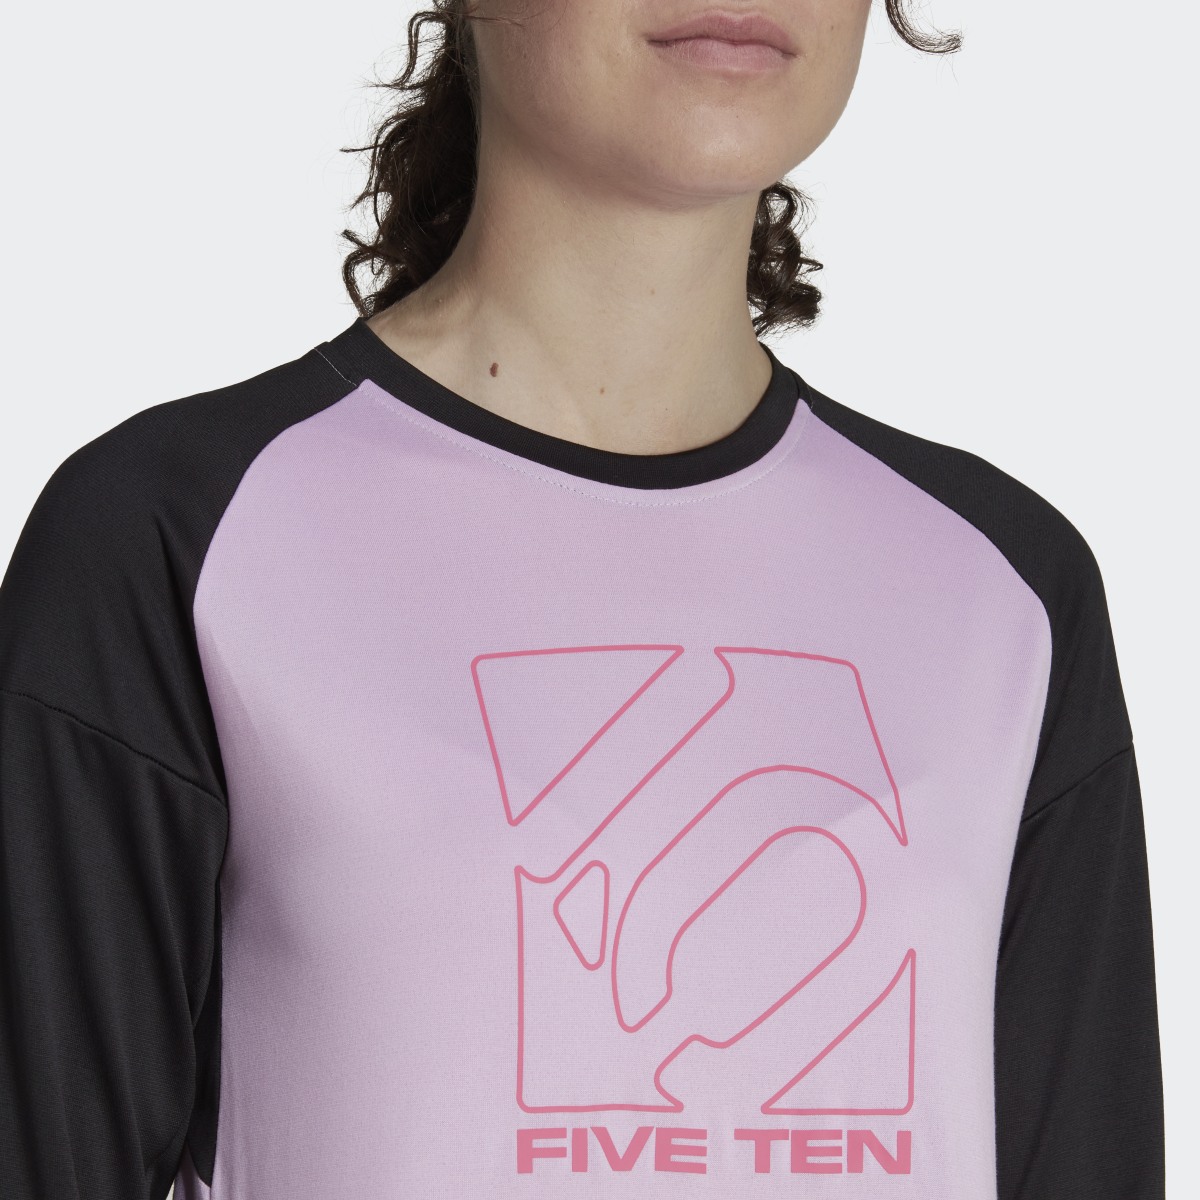 Adidas Five Ten Long Sleeve Jersey. 7